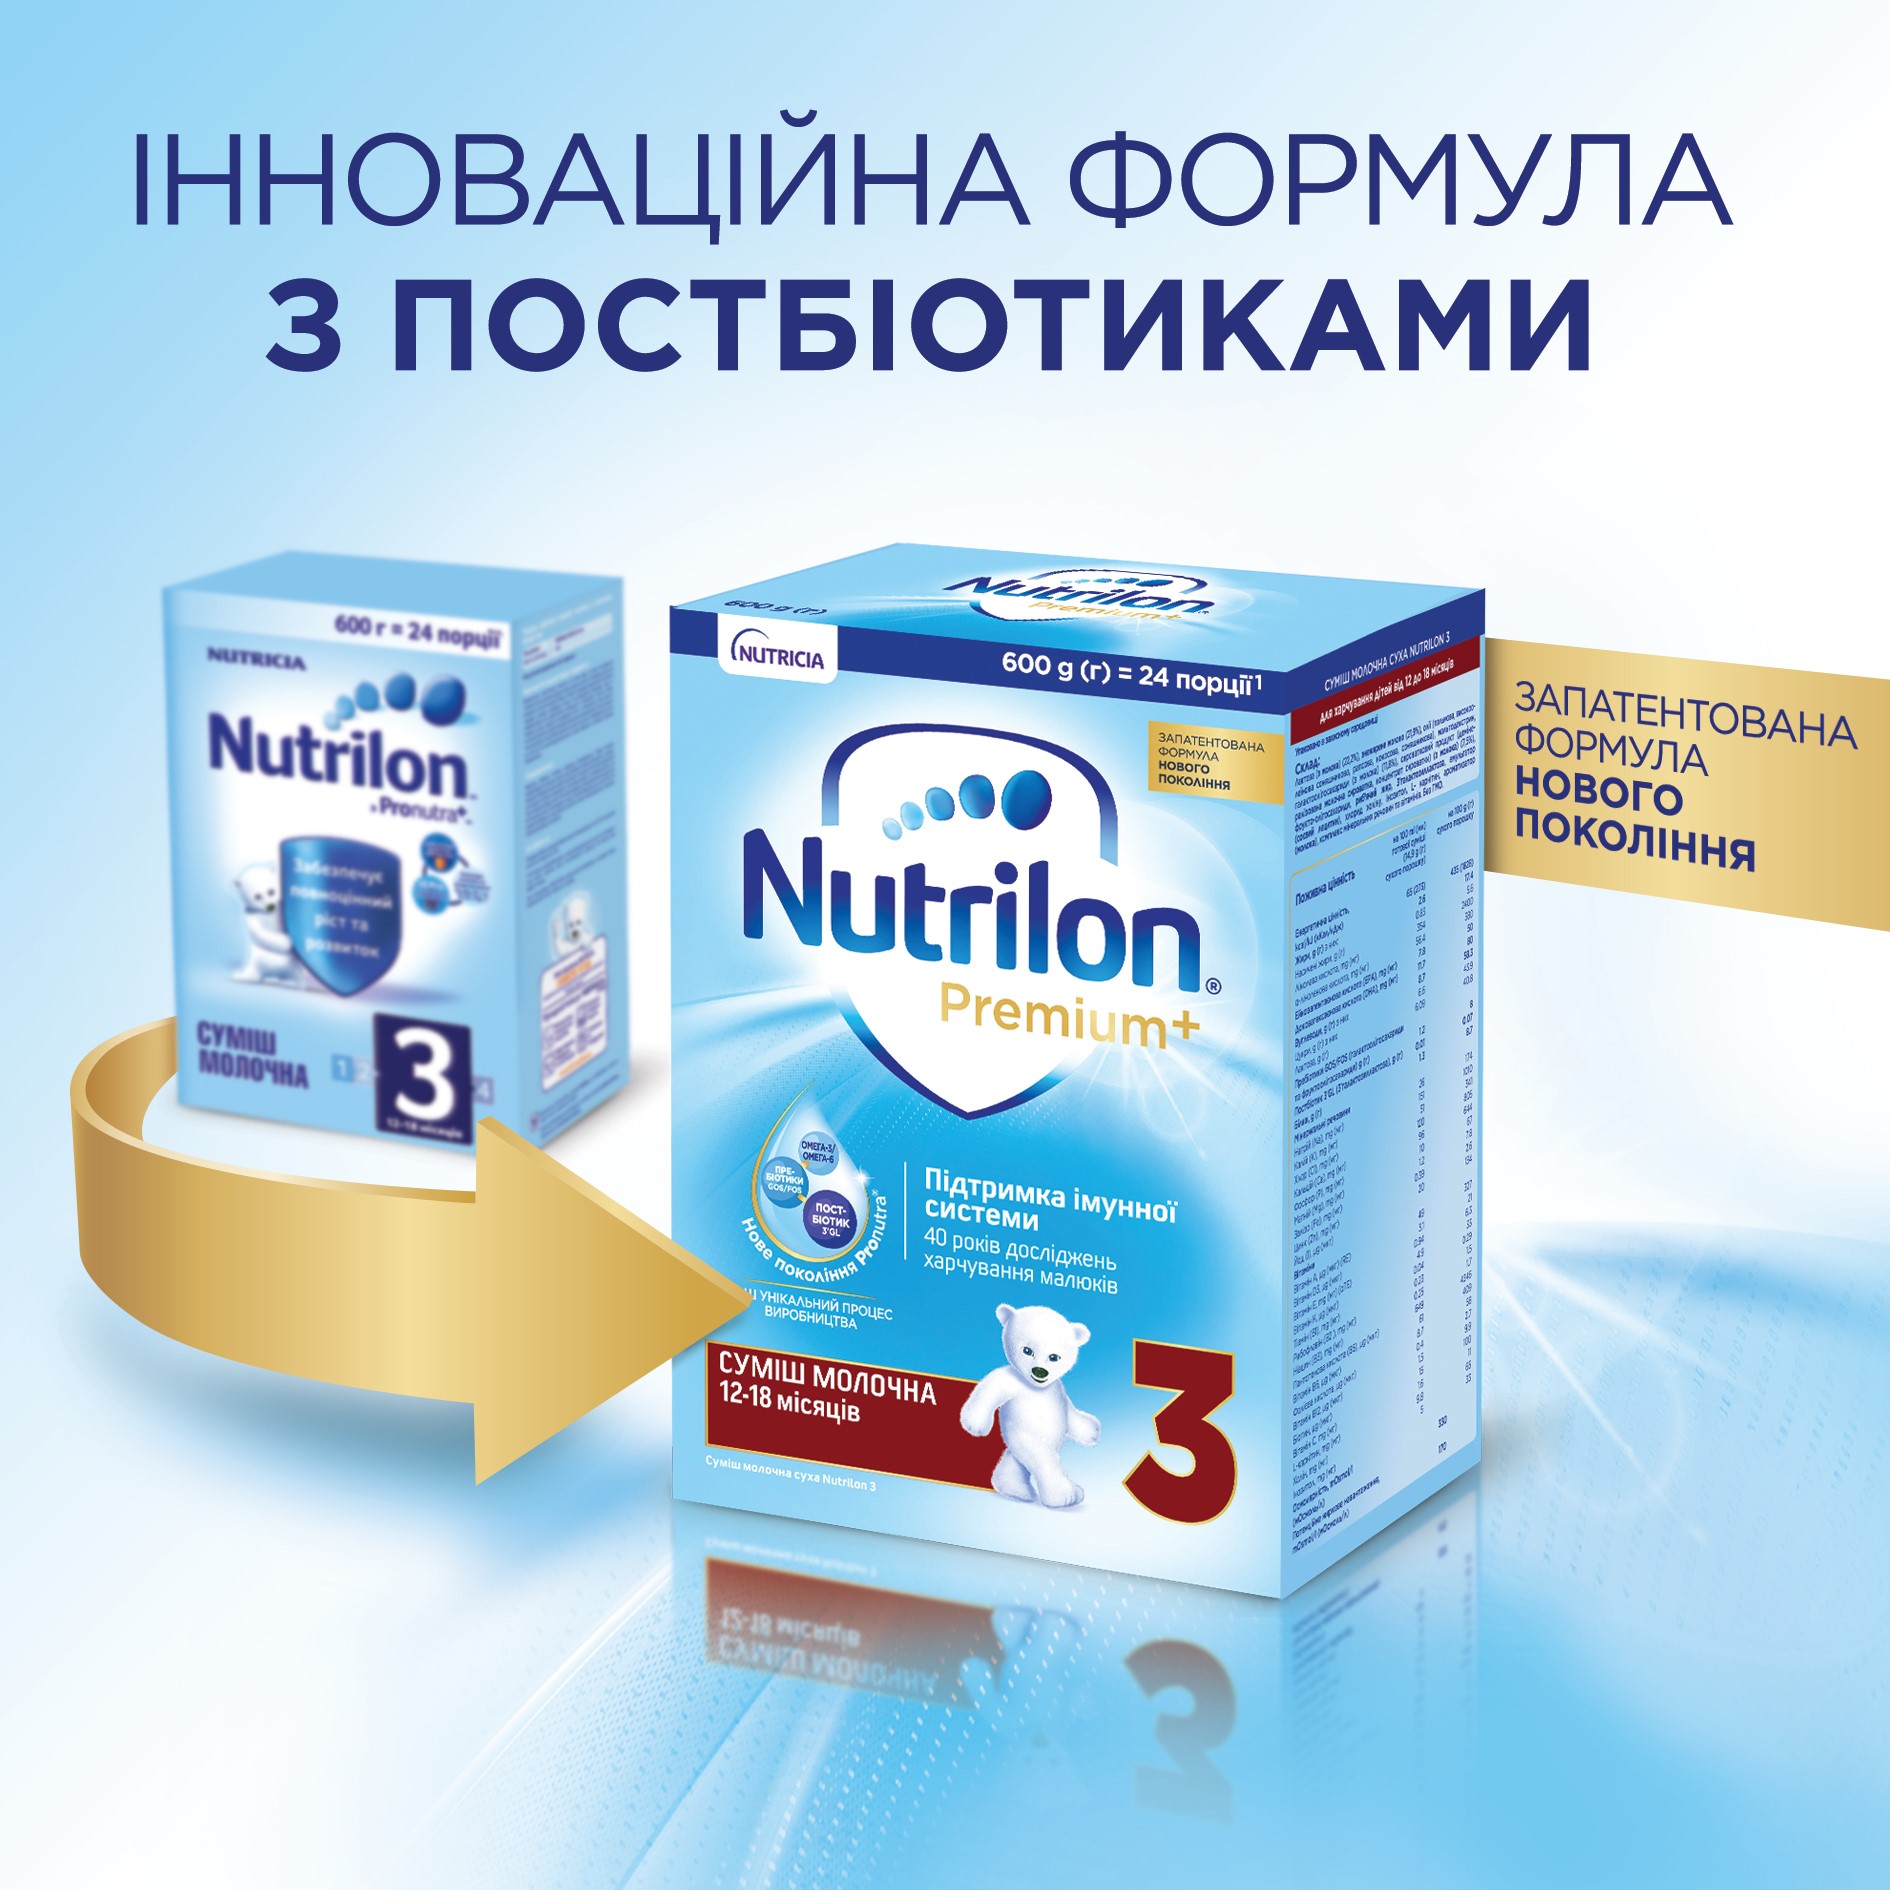 Сухая молочная смесь Nutrilon Premium 3+, 600 г - фото 2